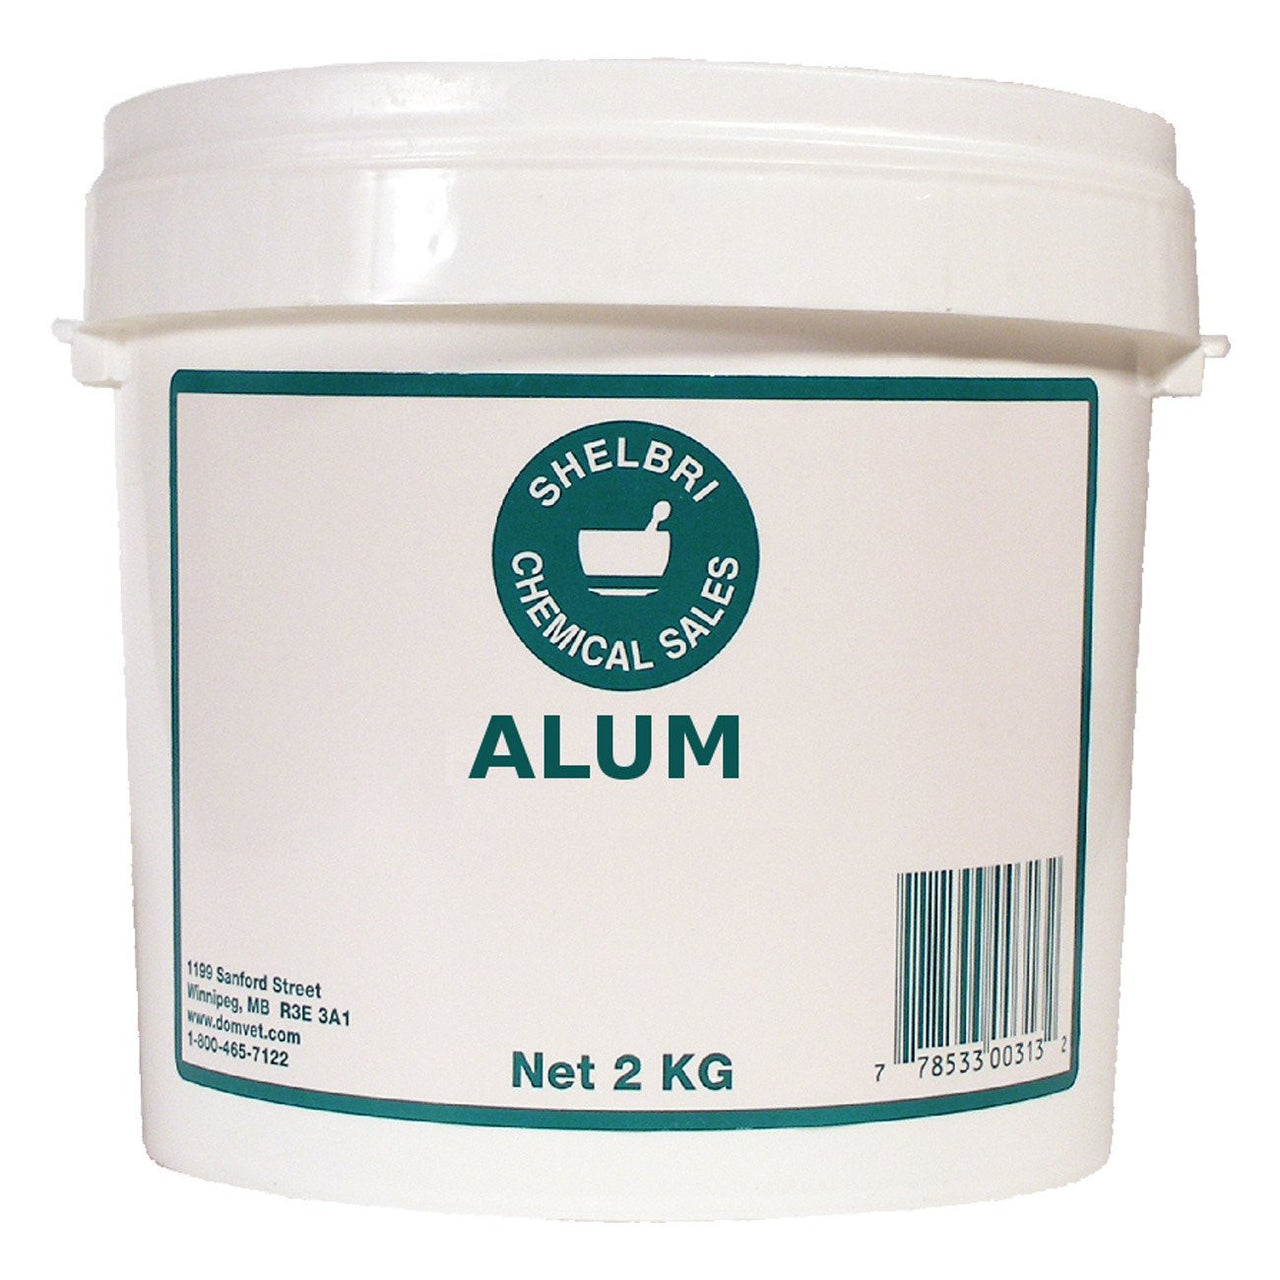 Shelbri Alum 2Kg - Equine Supplements Shelbri - Canada